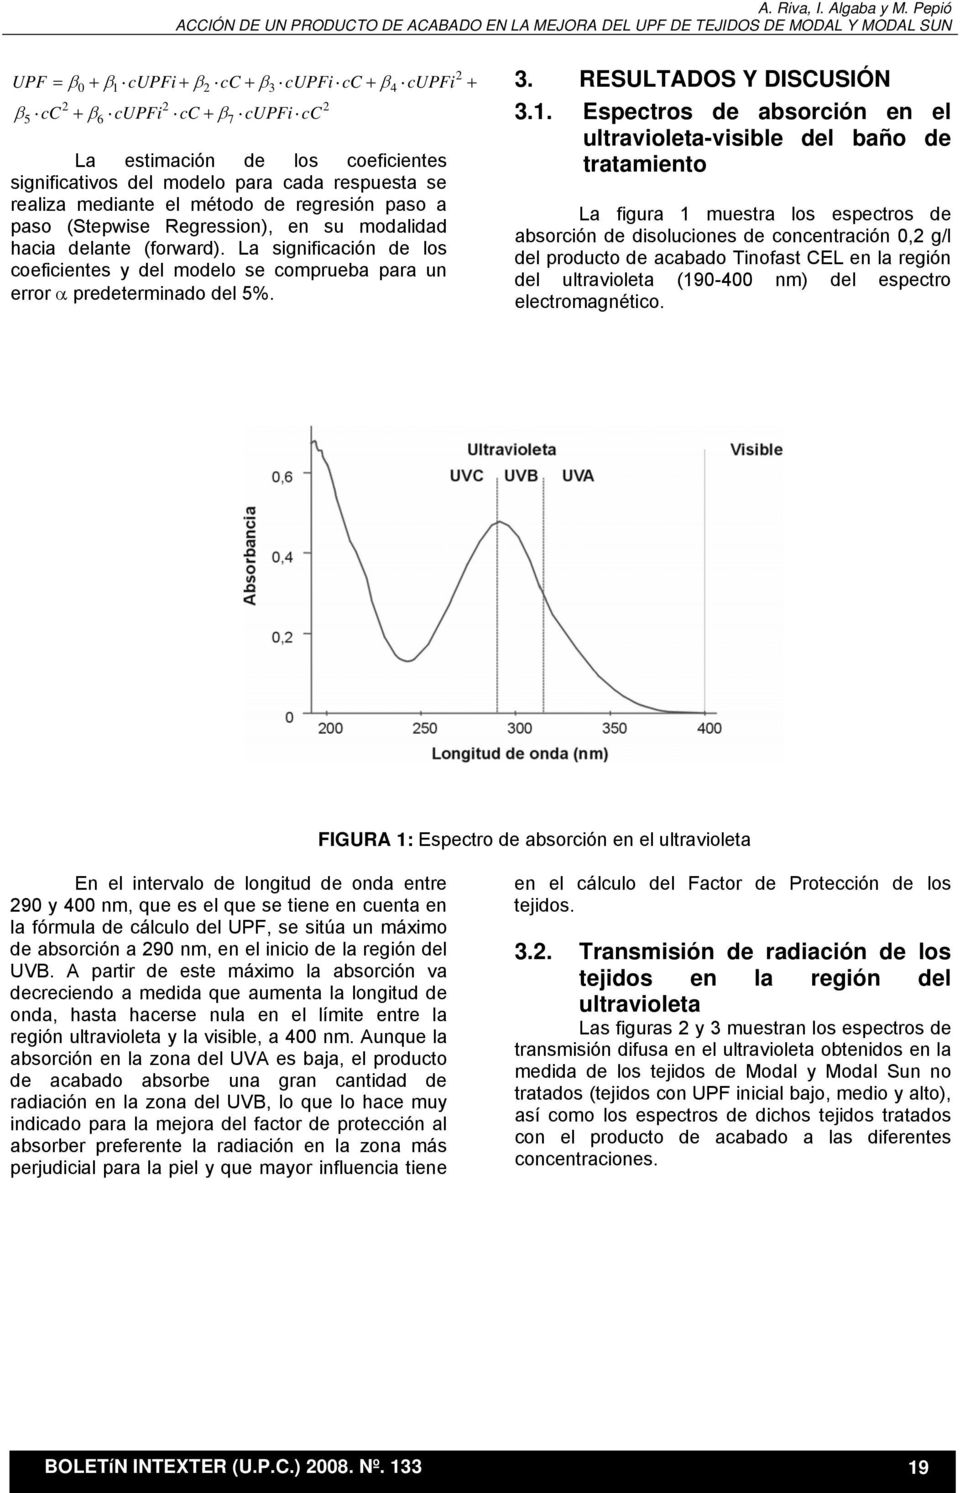 Espectros de absorción en el ultravioleta-visible del baño de tratamiento La figura 1 muestra los espectros de absorción de disoluciones de concentración 0, g/l del producto de acabado Tinofast CEL